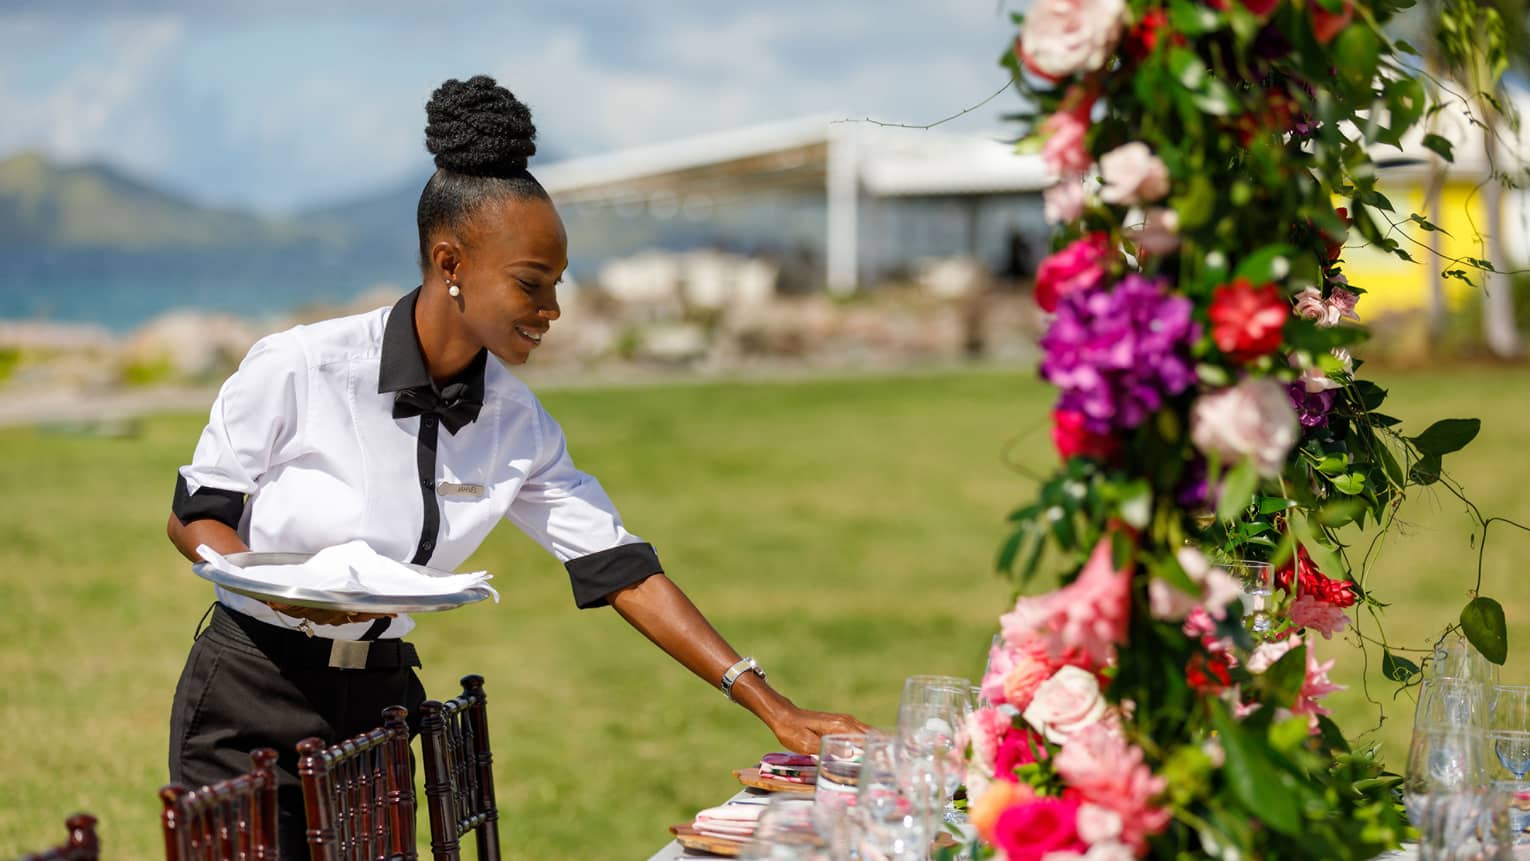 Uniformed wedding service specialist adjusting table setting, pink floral arrangement in forefront